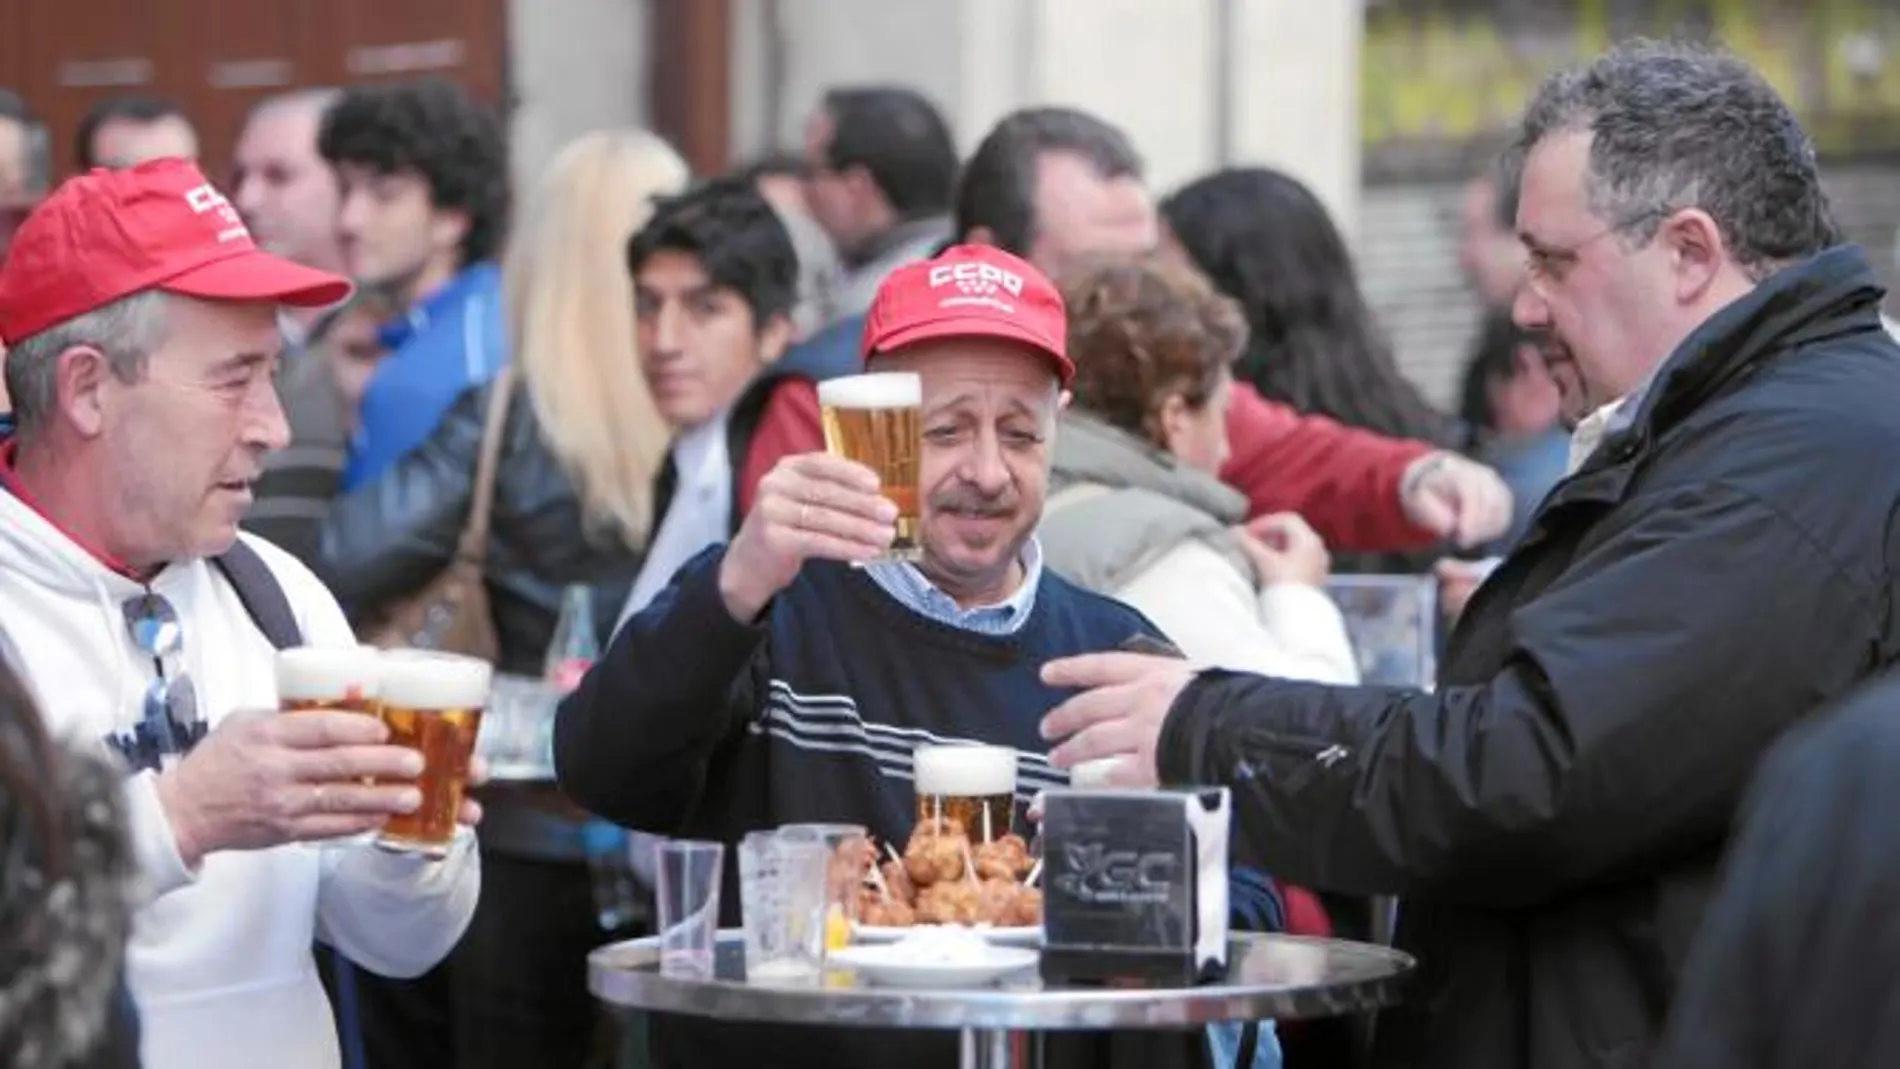 El mensaje sindical: «Ahora a tomar cervezas» al son de la Internacional